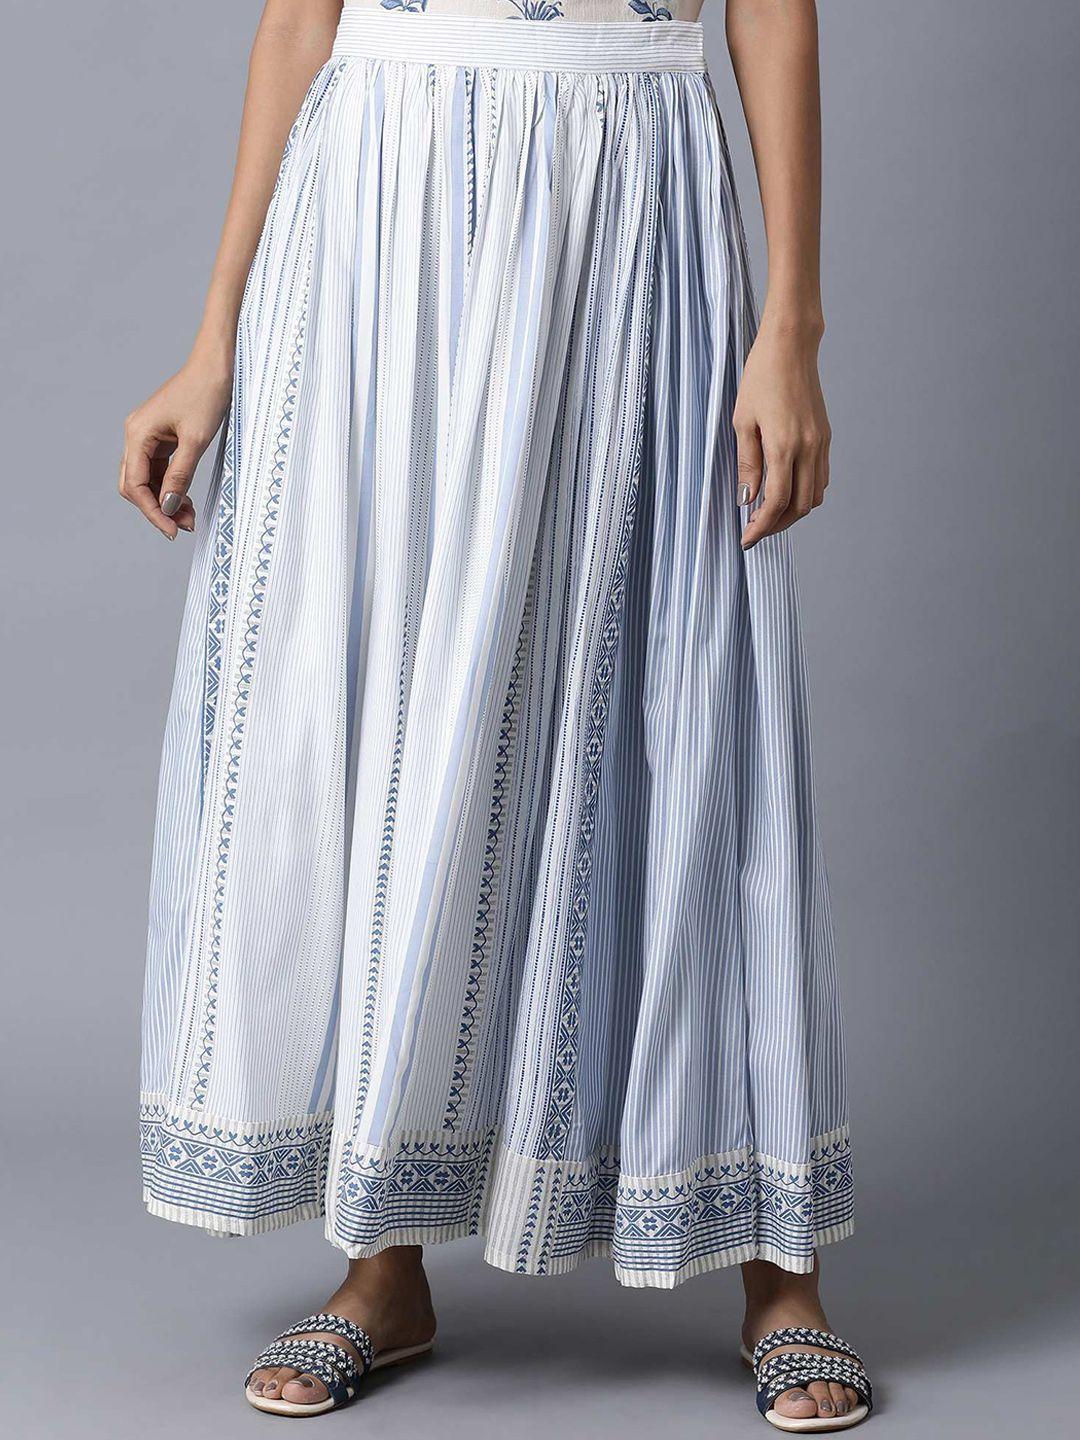 w women white & blue geometric printed flared maxi skirt